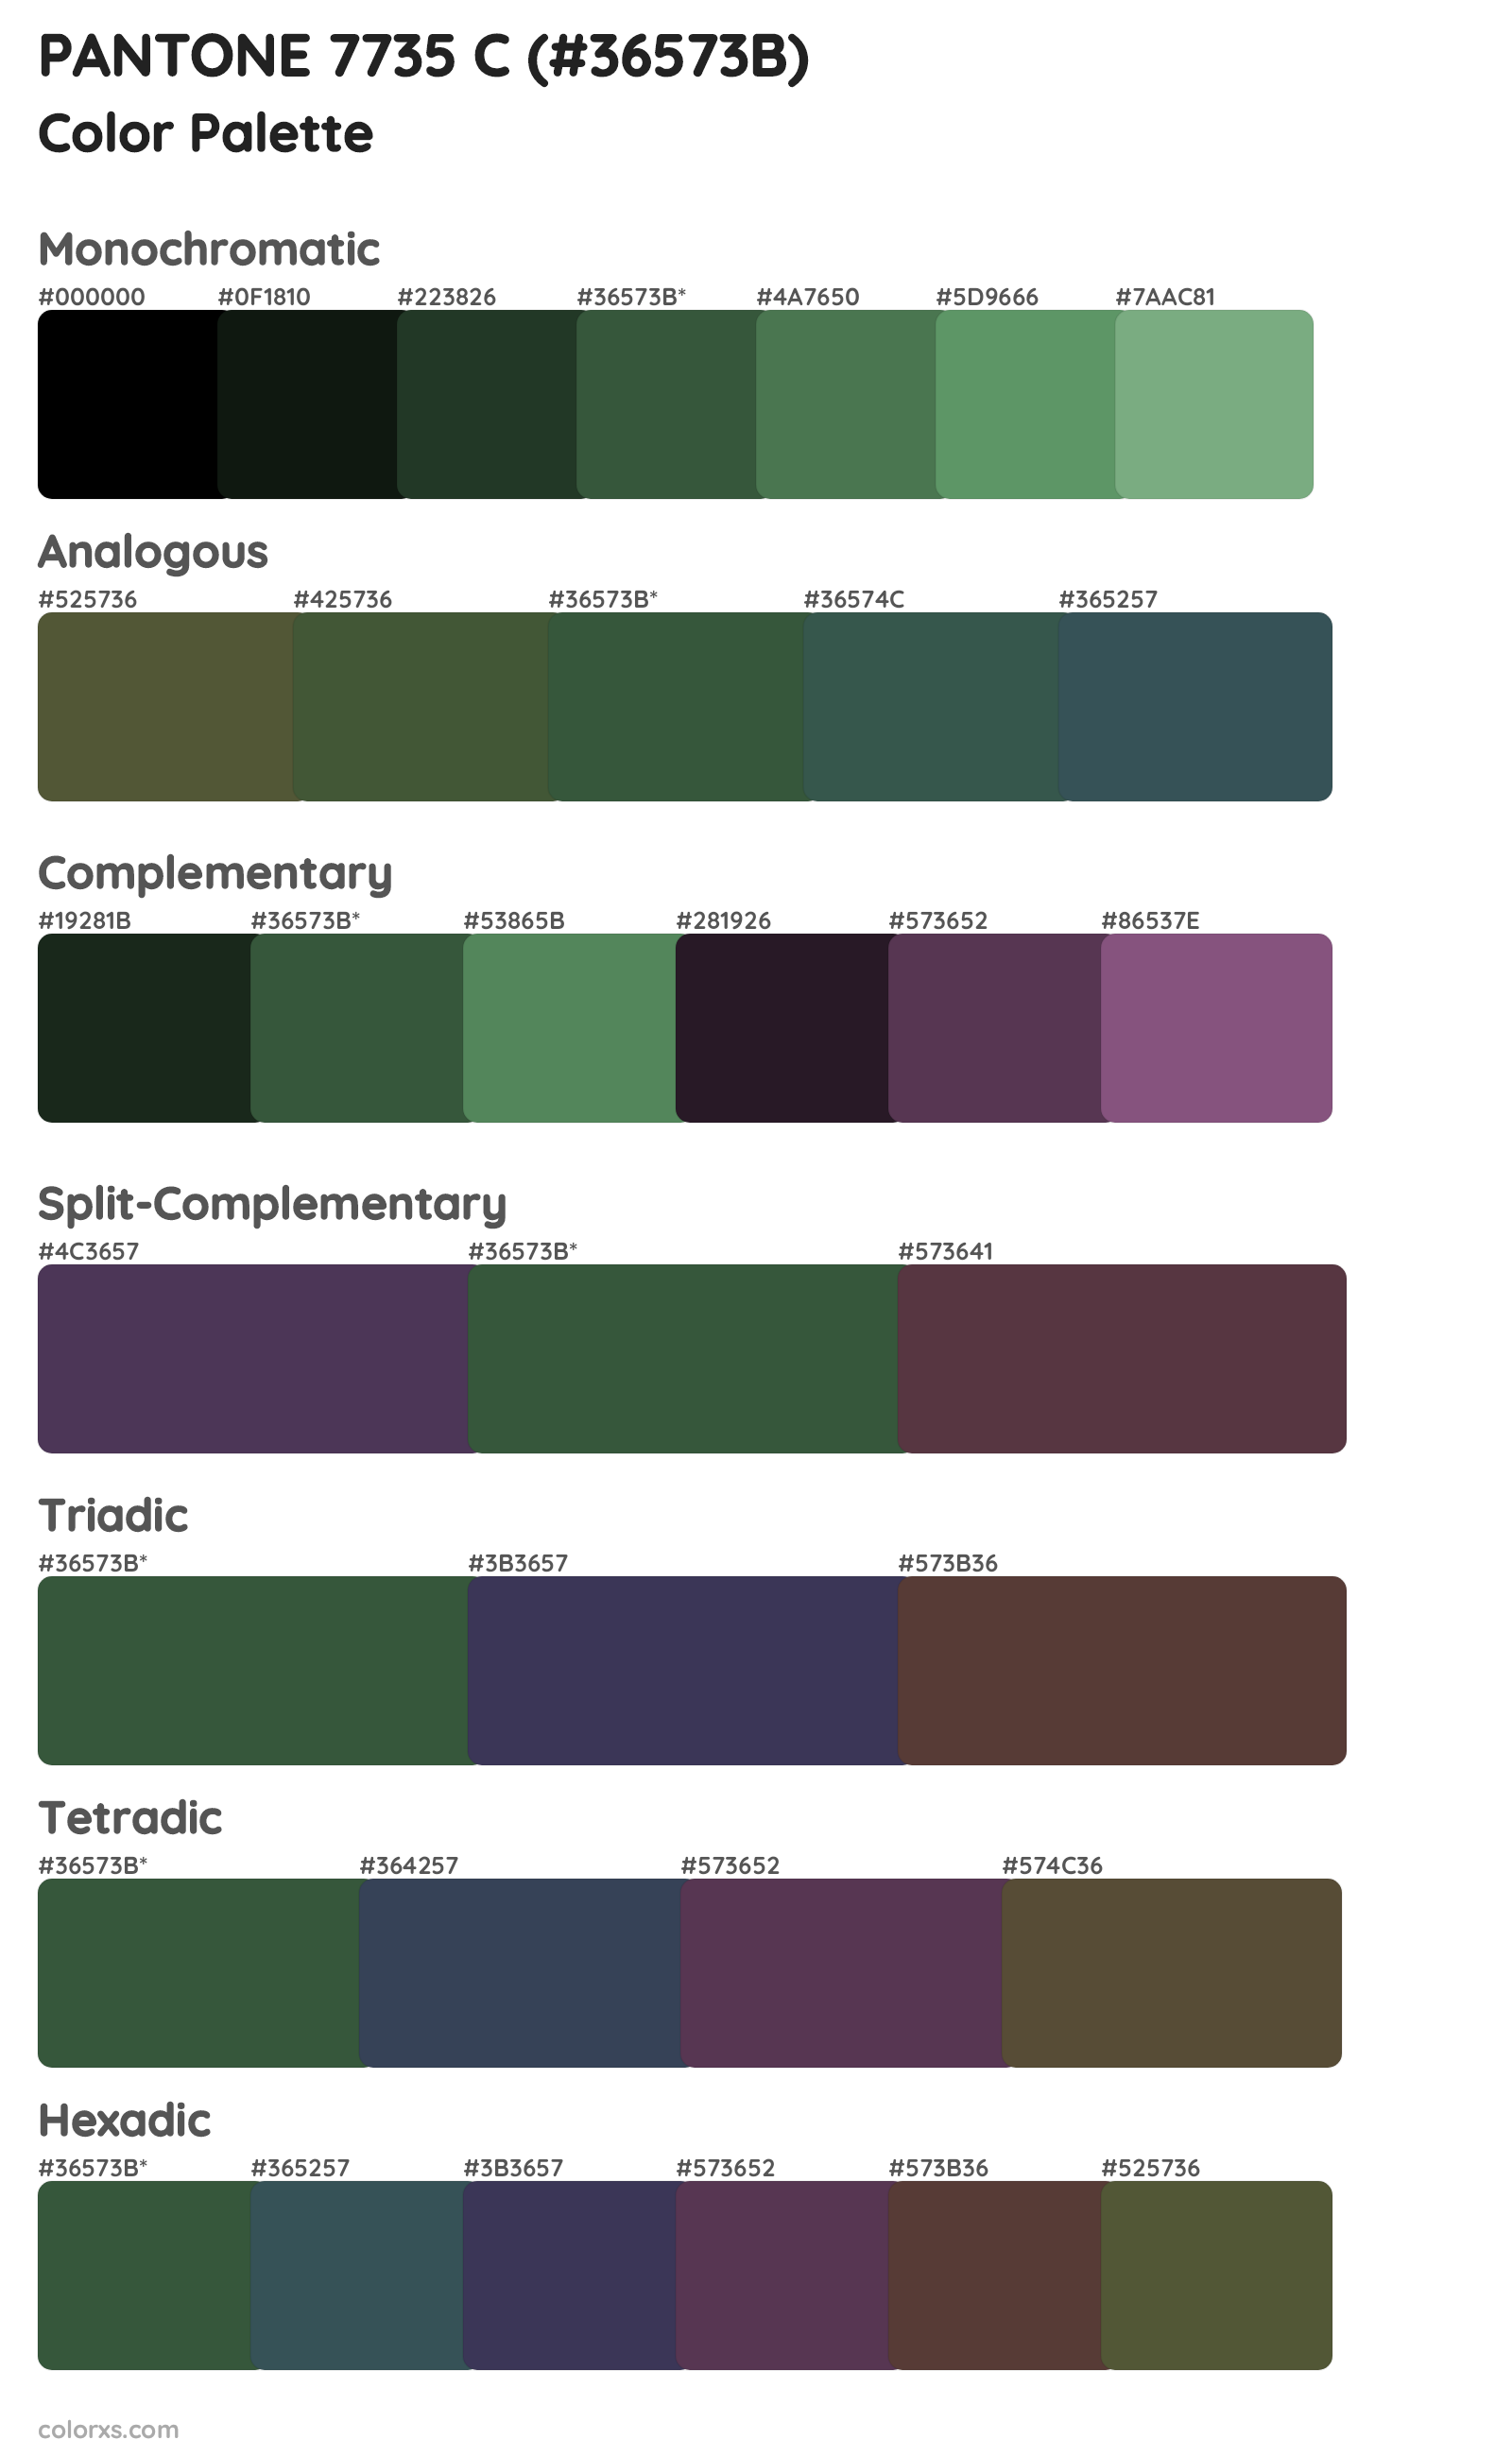 PANTONE 7735 C Color Scheme Palettes